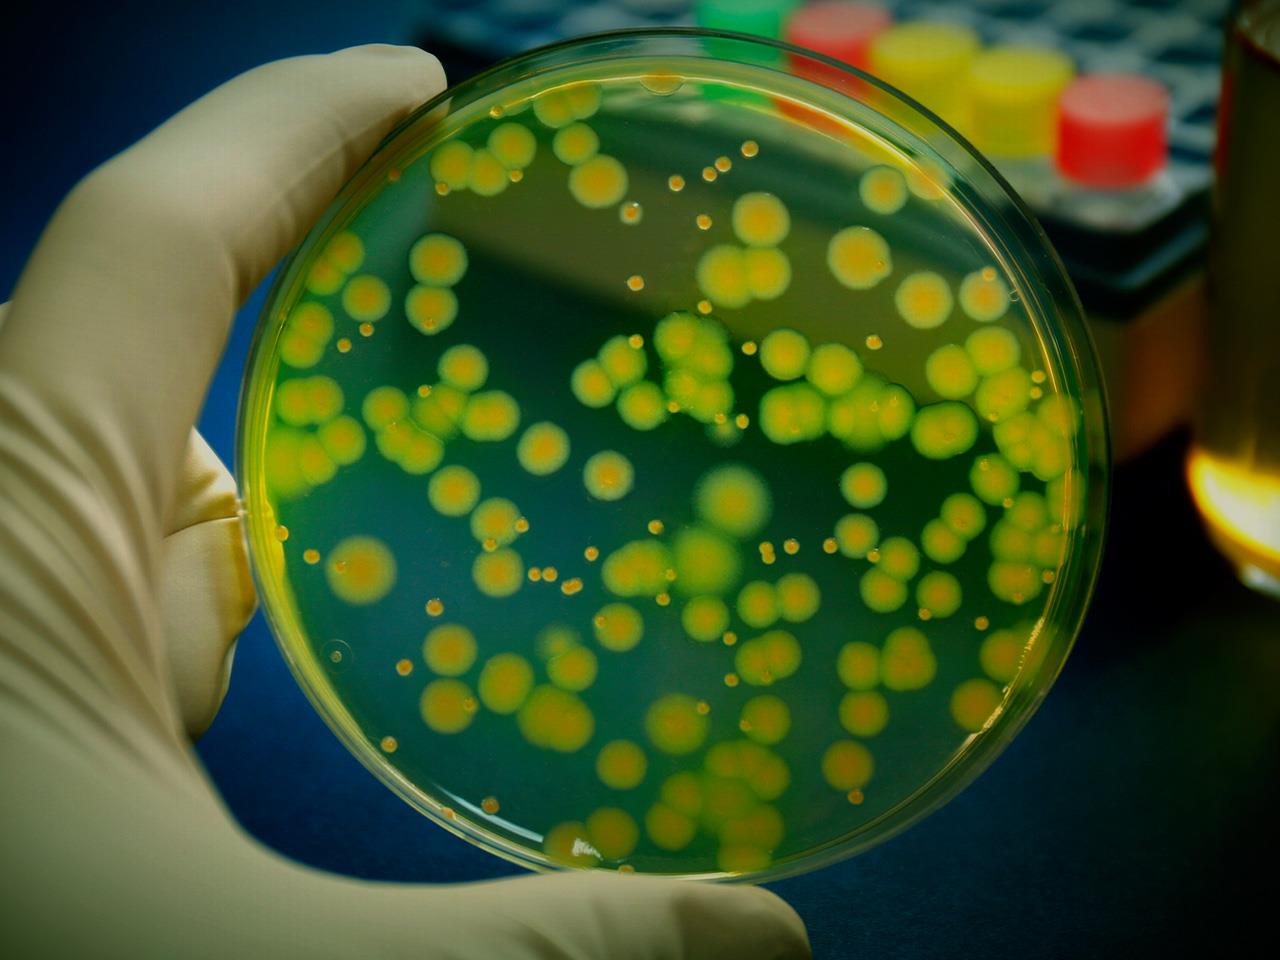 Селекция микроорганизмов фото